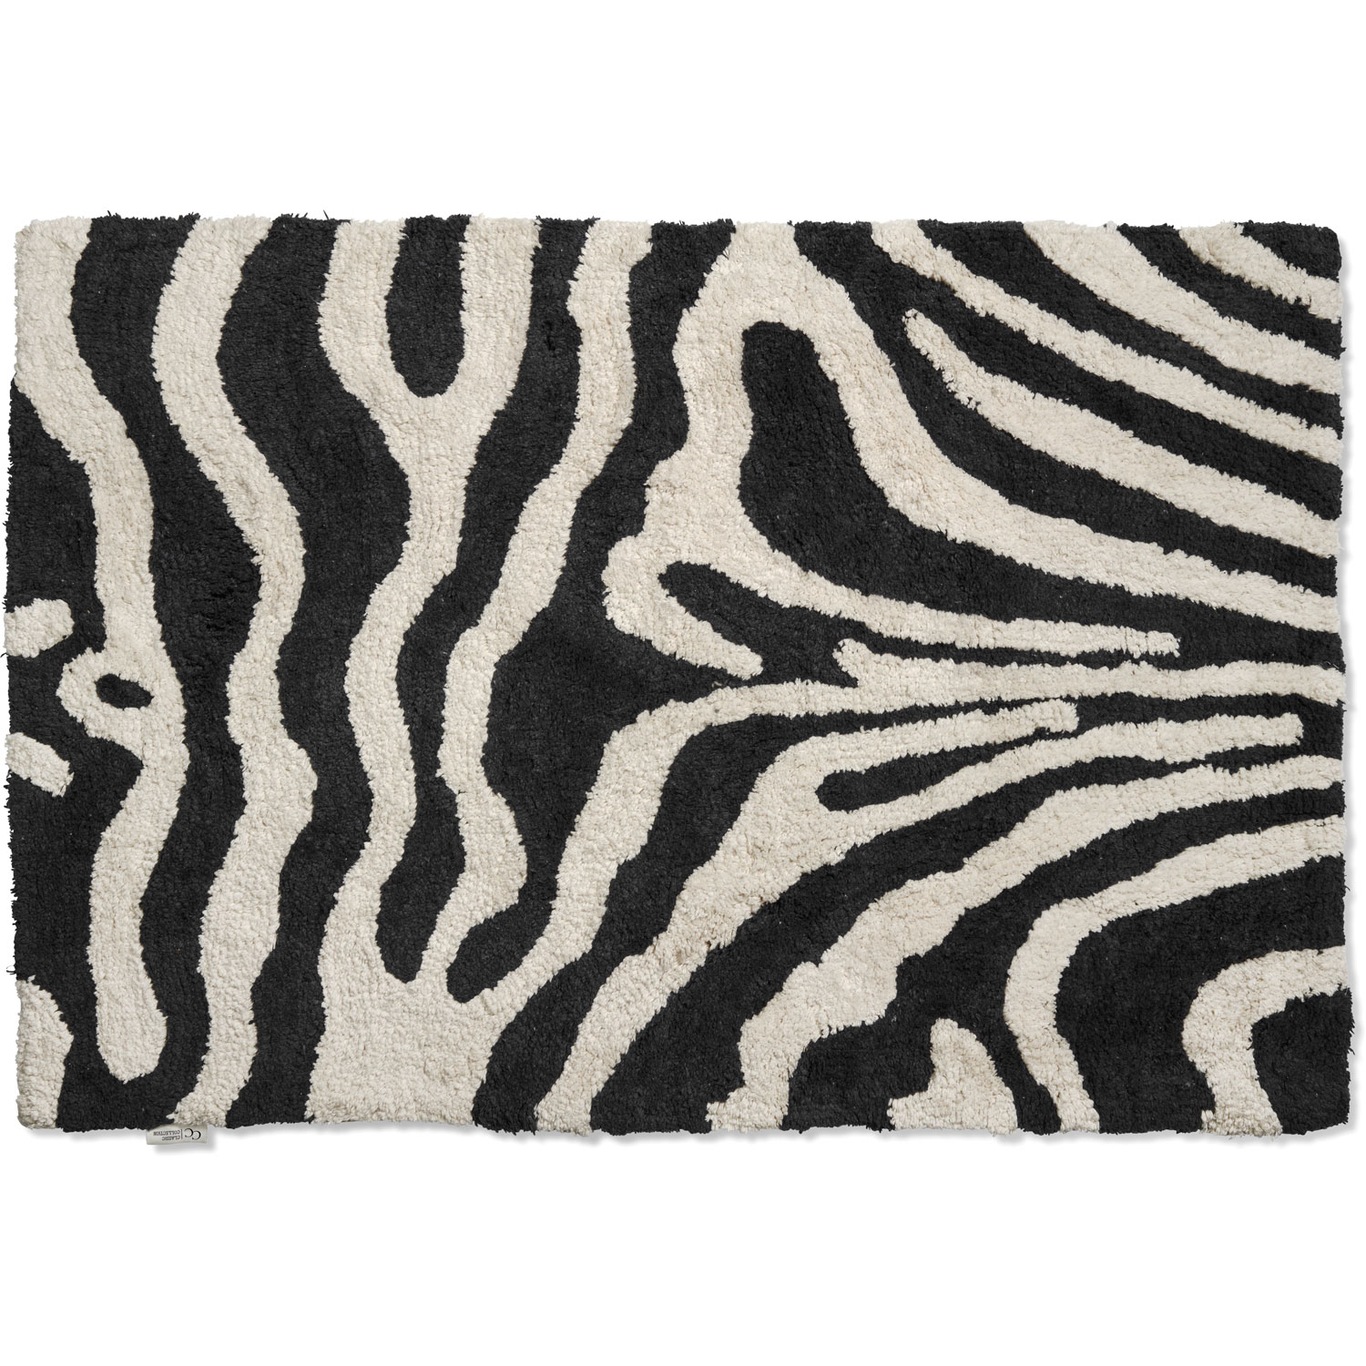 Zebra Kylpyhuonematto 60x90 cm, Musta/Valkoinen